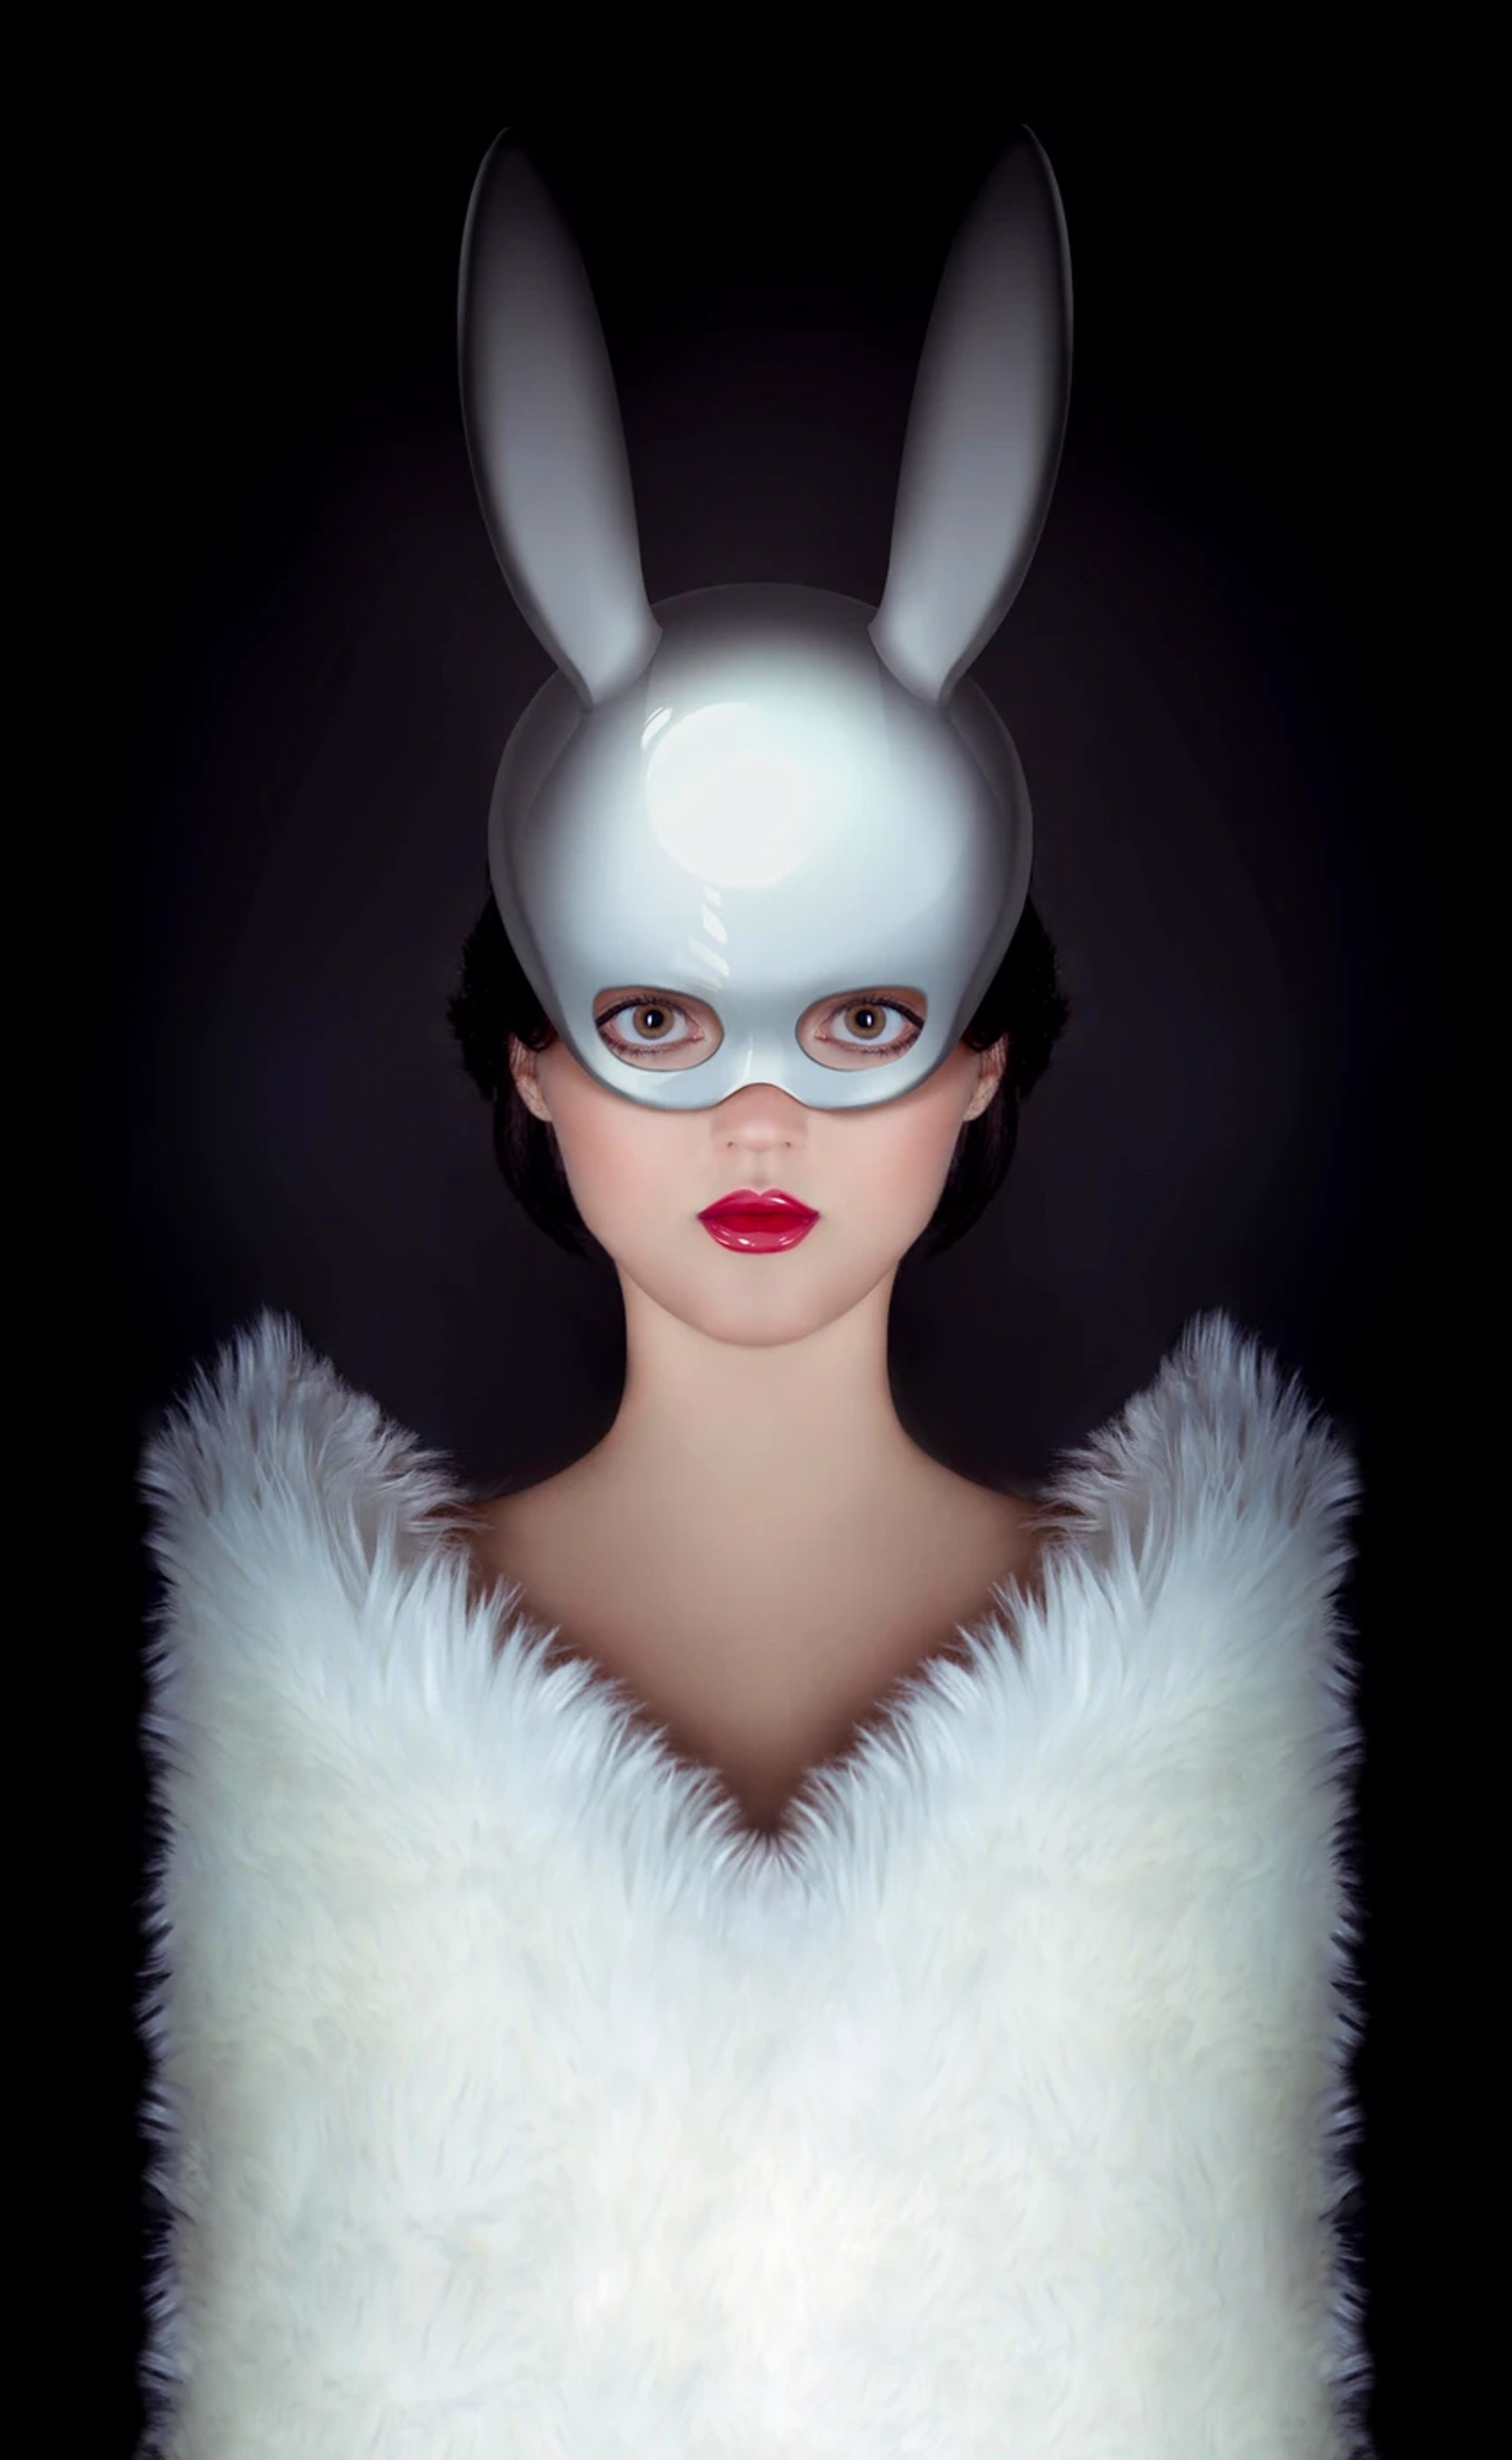 The Royal Rabbit by Carlos Gamez de Francisco